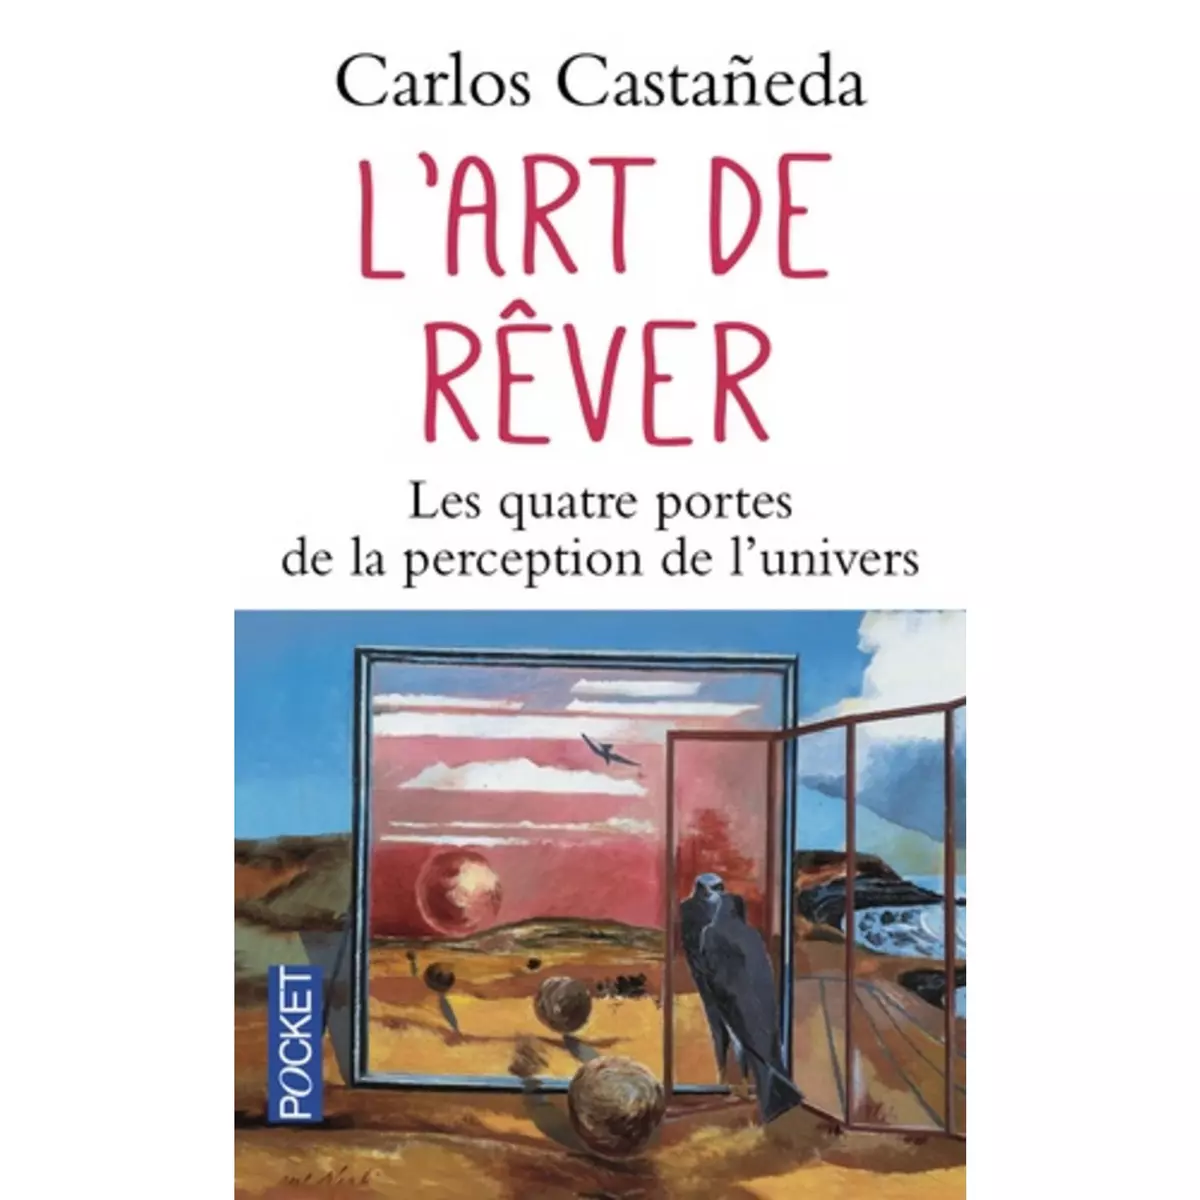  L'ART DE REVER. LES QUATRE PORTES DE LA PERCEPTION DE L'UNIVERS, Castaneda Carlos